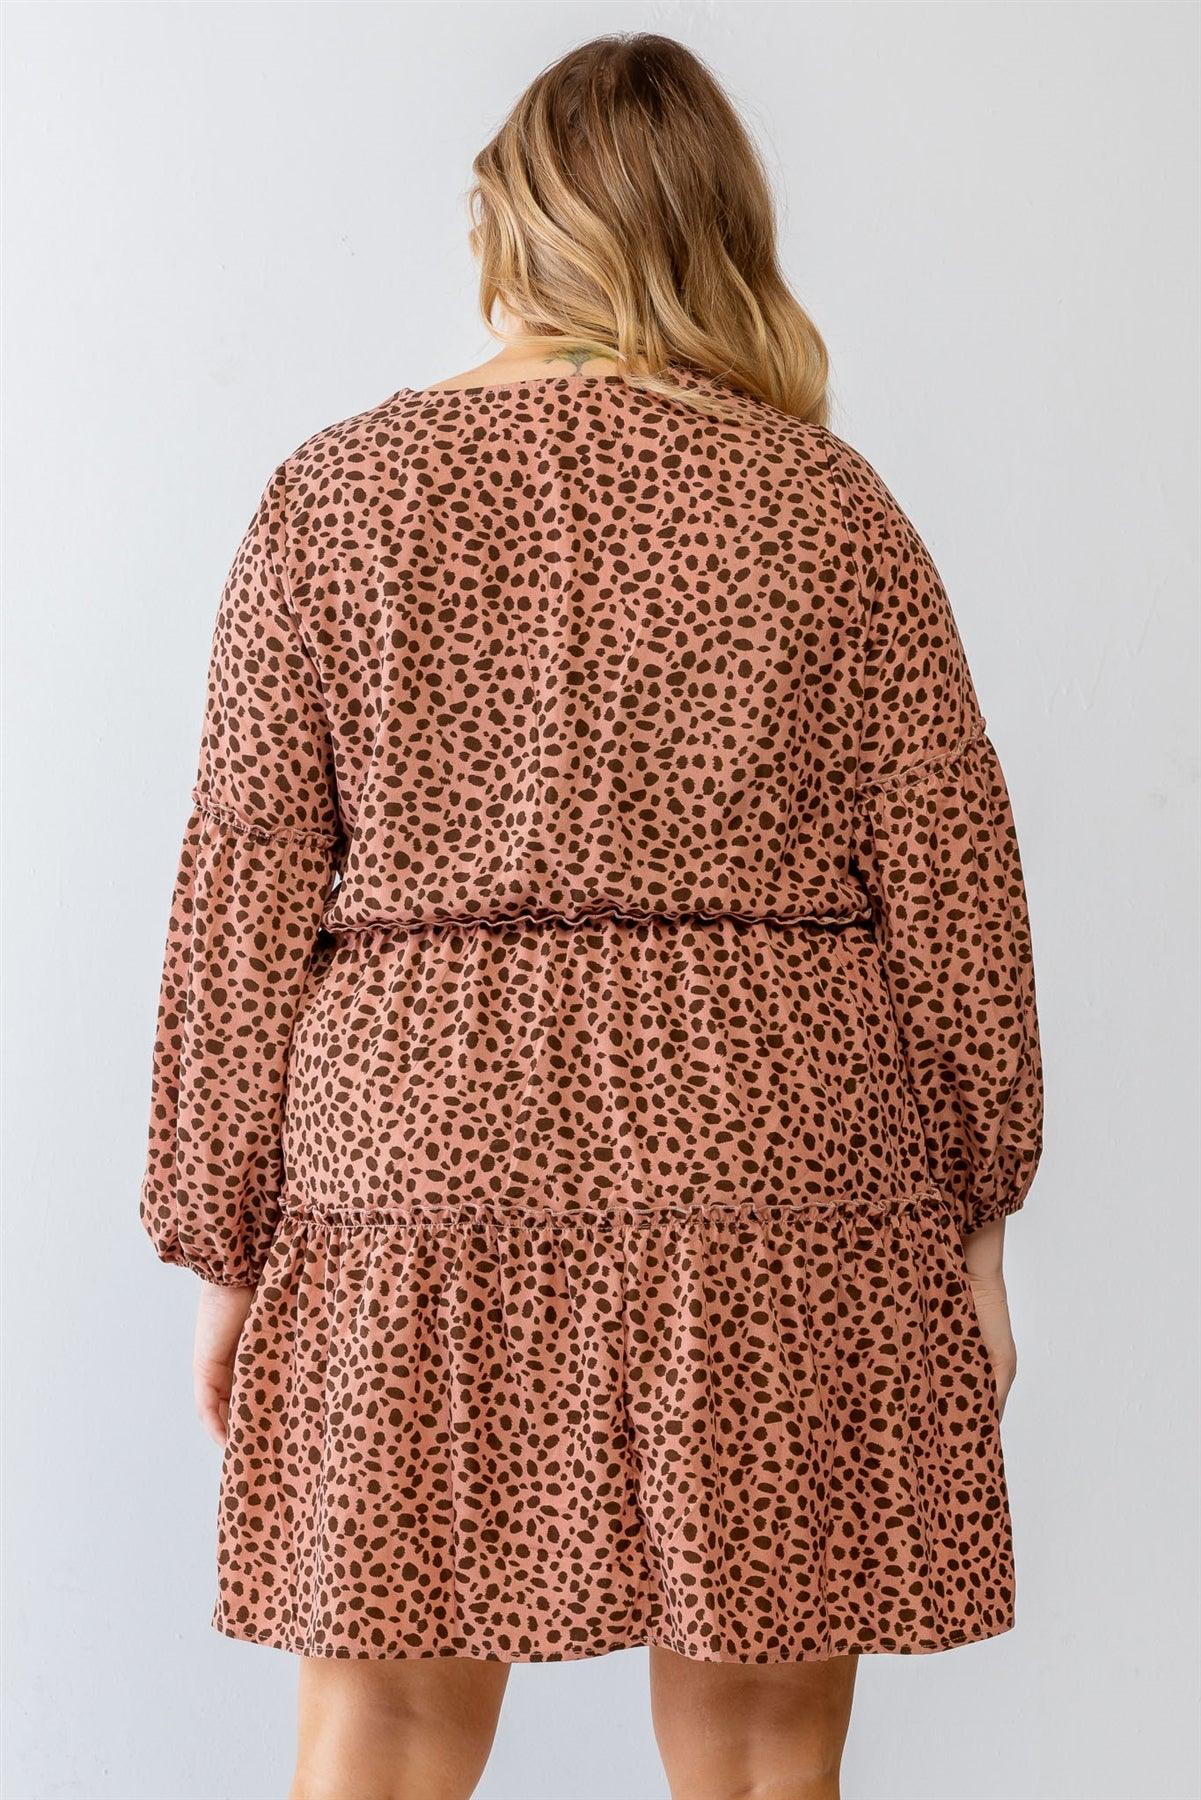 Blush Leopard Print V-Neck Flare Hem Mini Dress